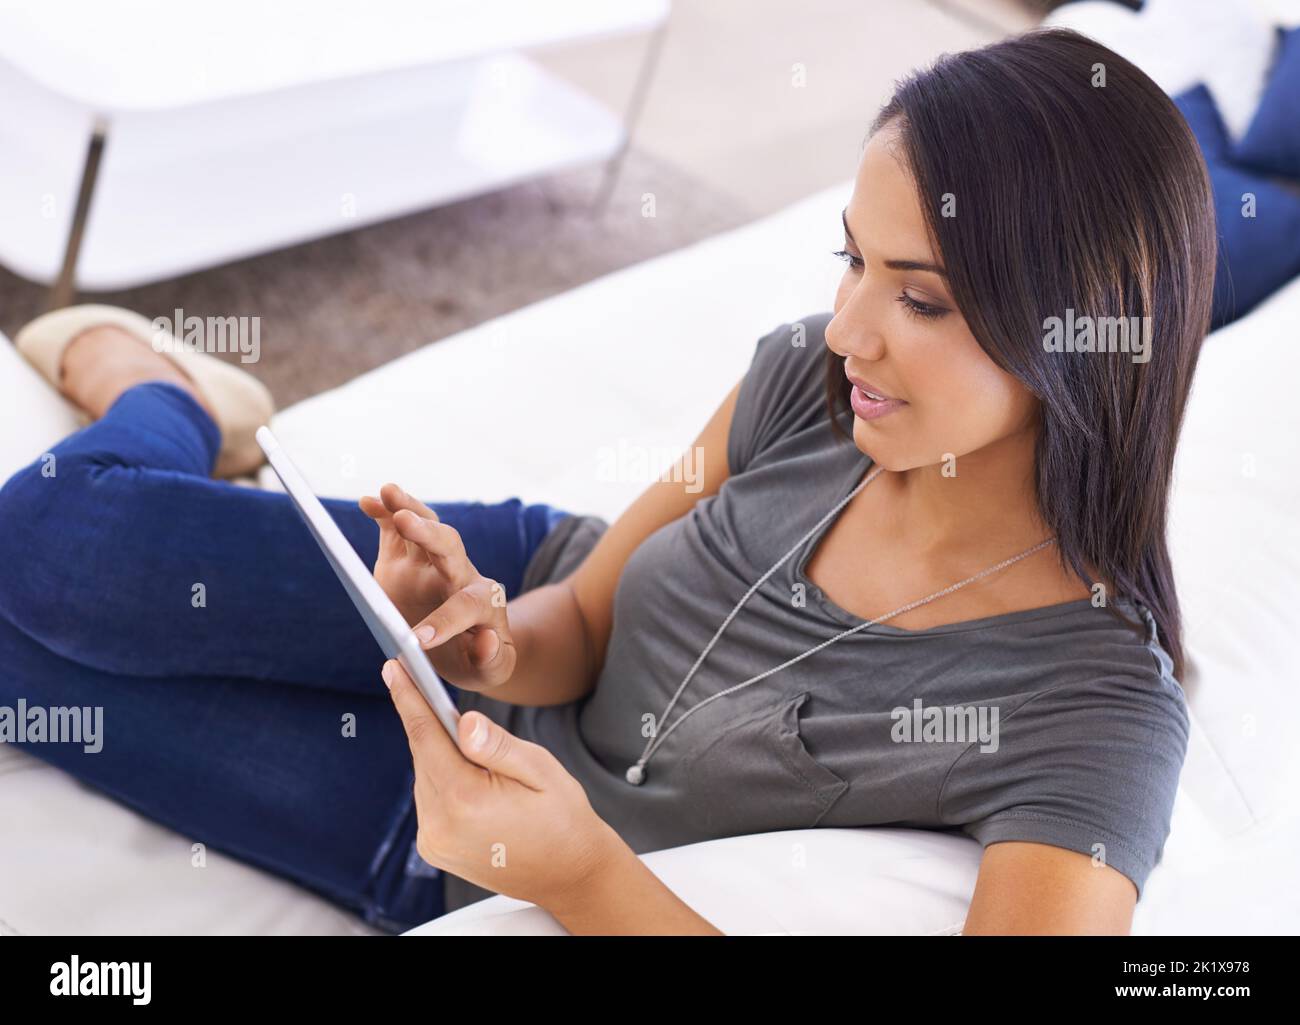 La communication a rendu la conventice. Une jeune femme attrayante utilisant sa tablette numérique à la maison Banque D'Images